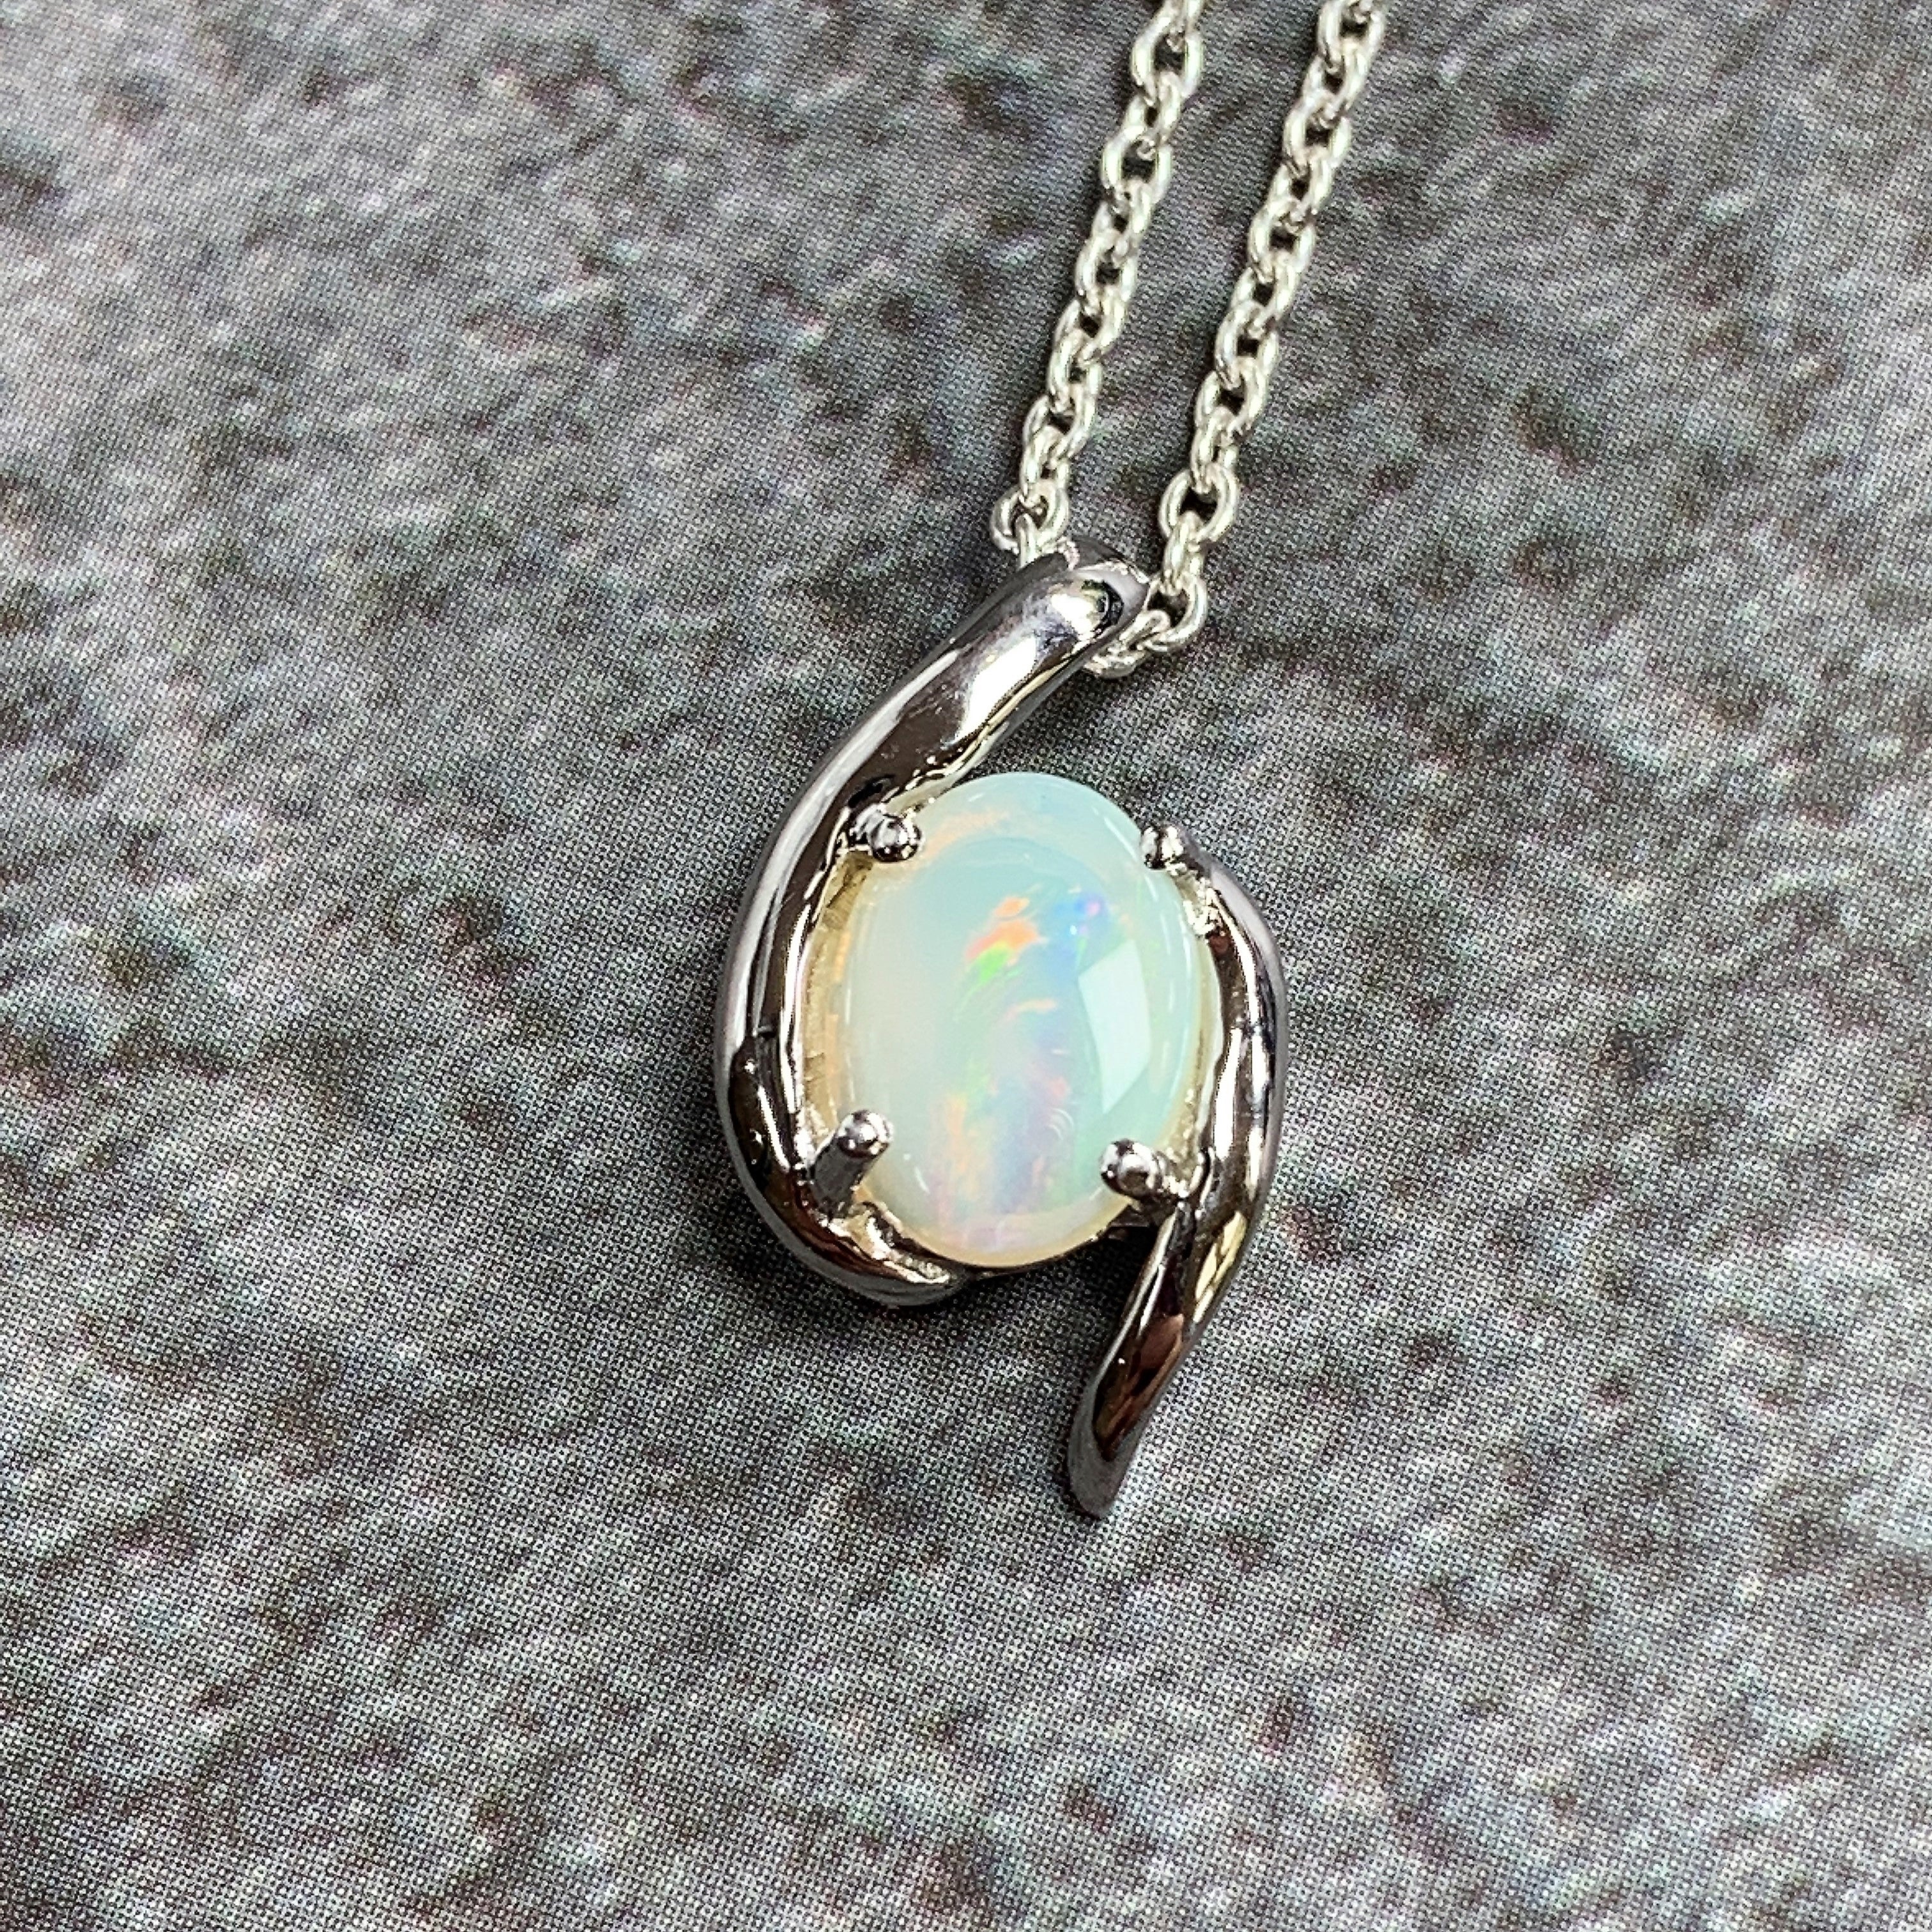 Sterling Silver swirl 8x6mm Crystal Opal pendant - Masterpiece Jewellery Opal & Gems Sydney Australia | Online Shop